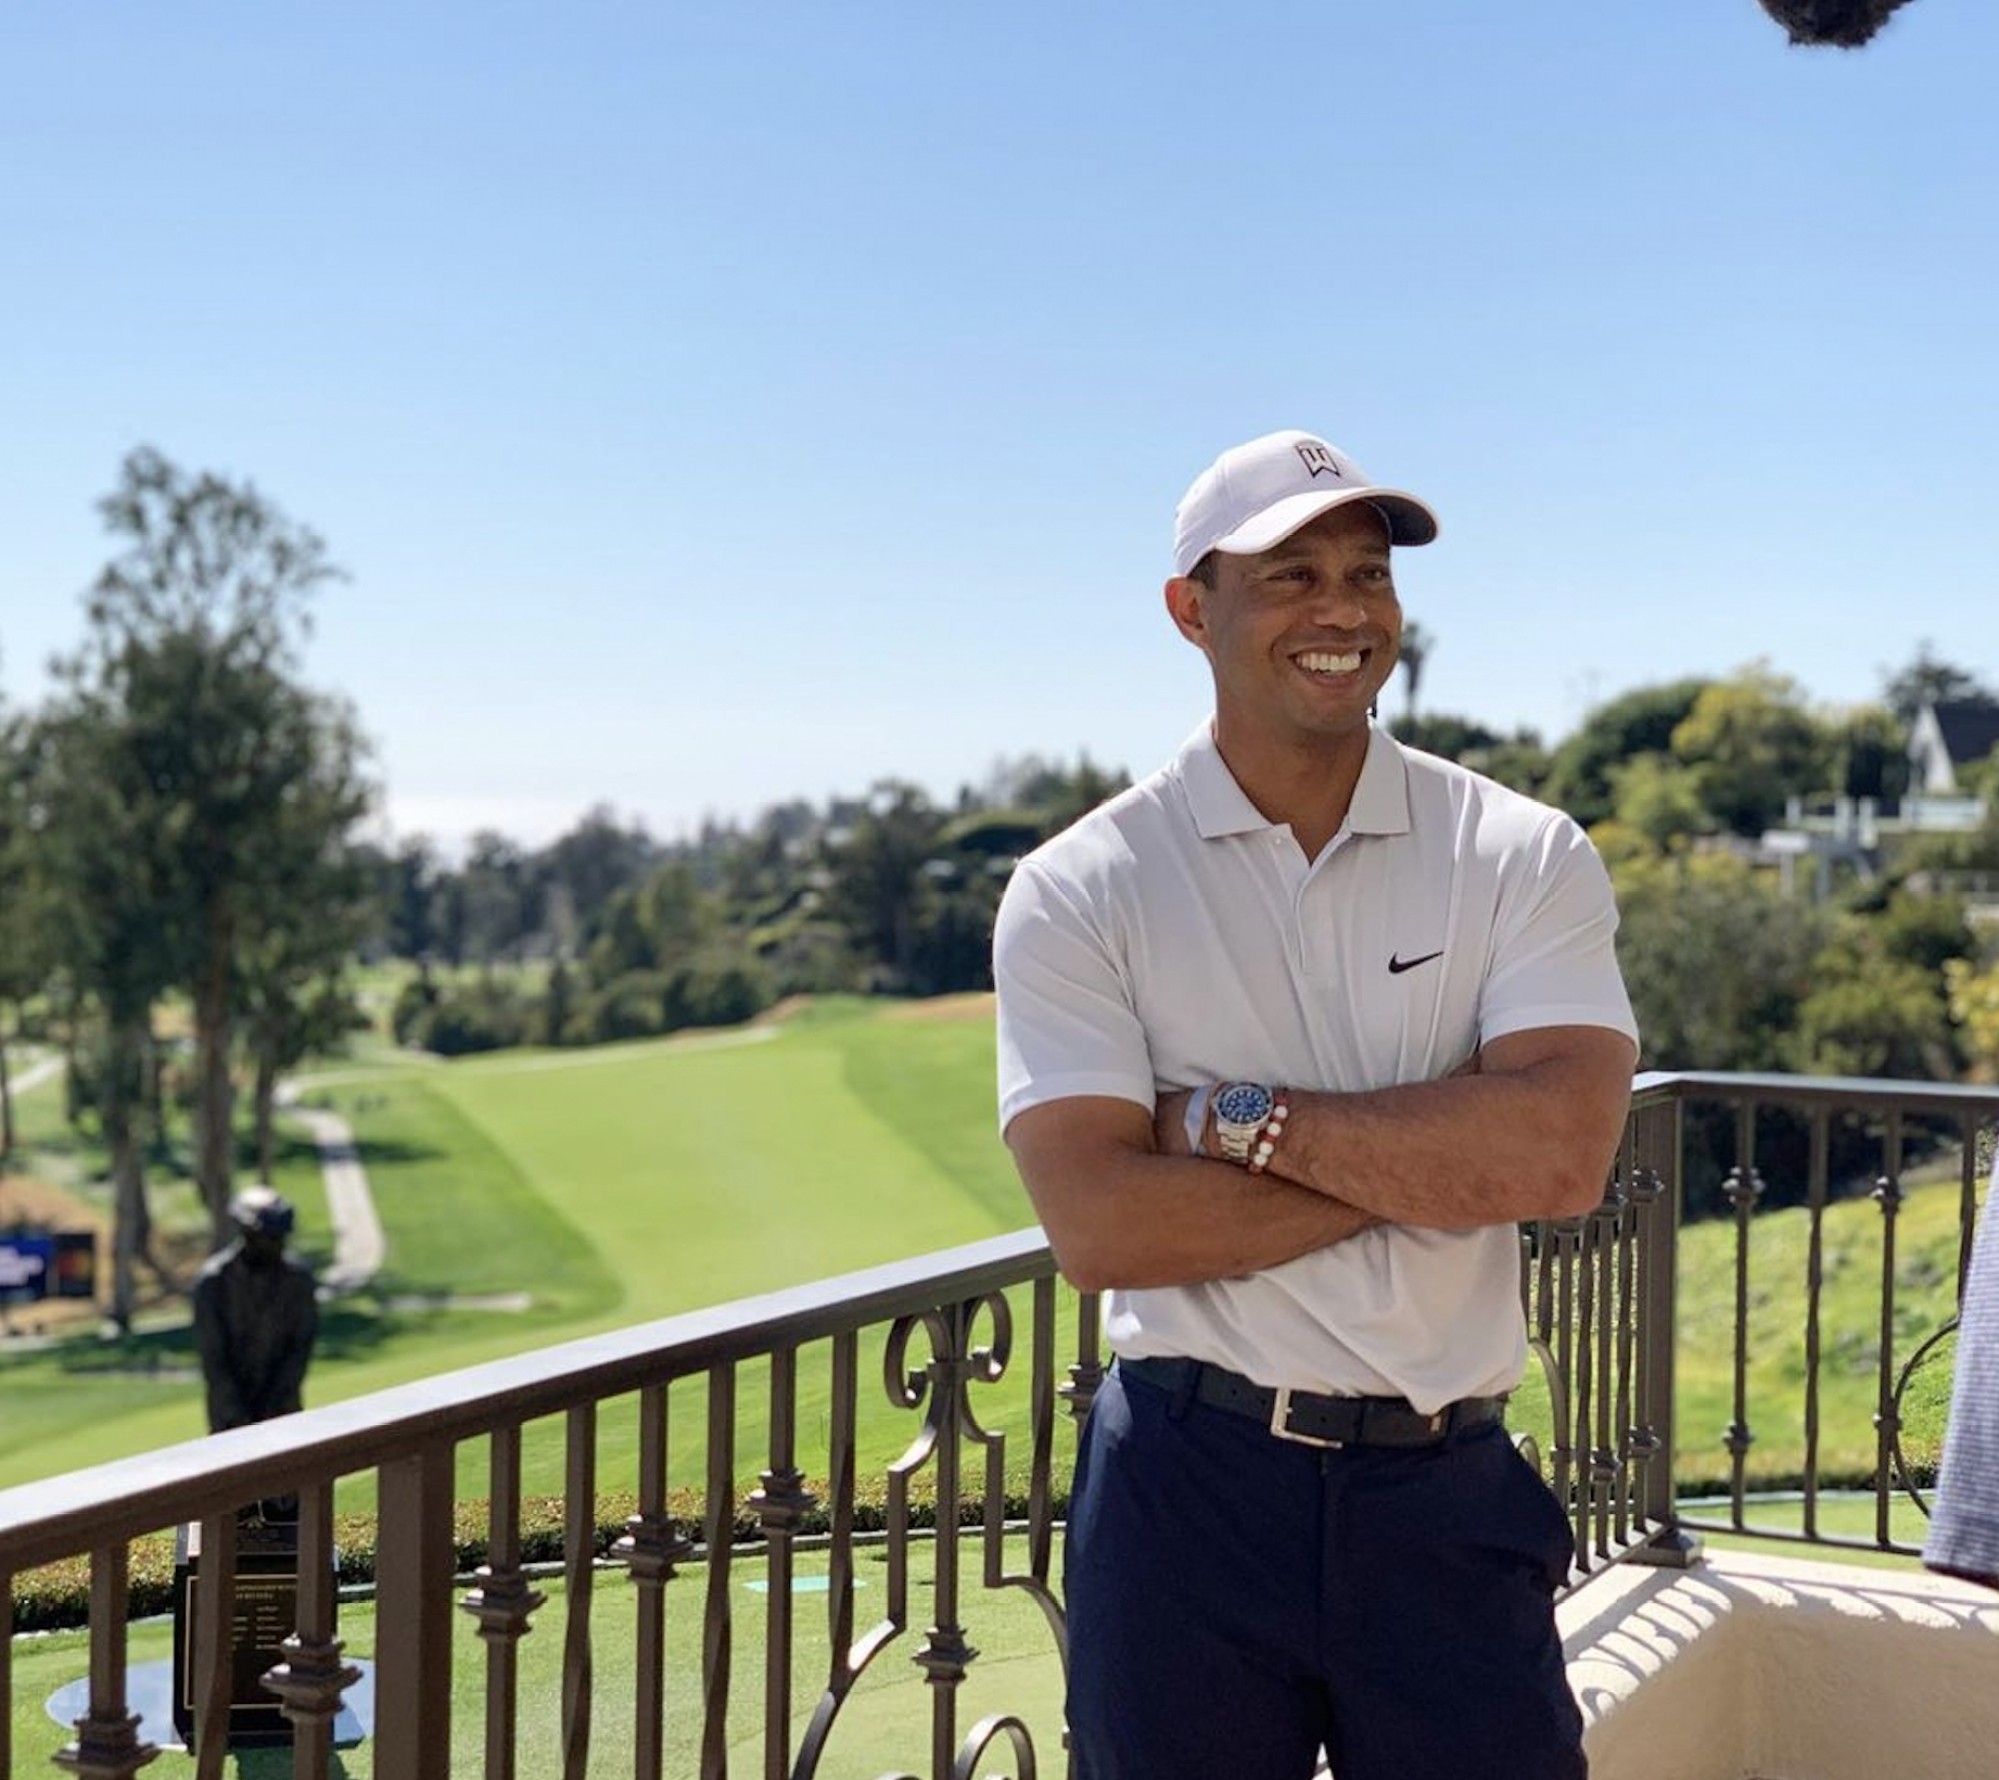 World class golf player Tiger Woods